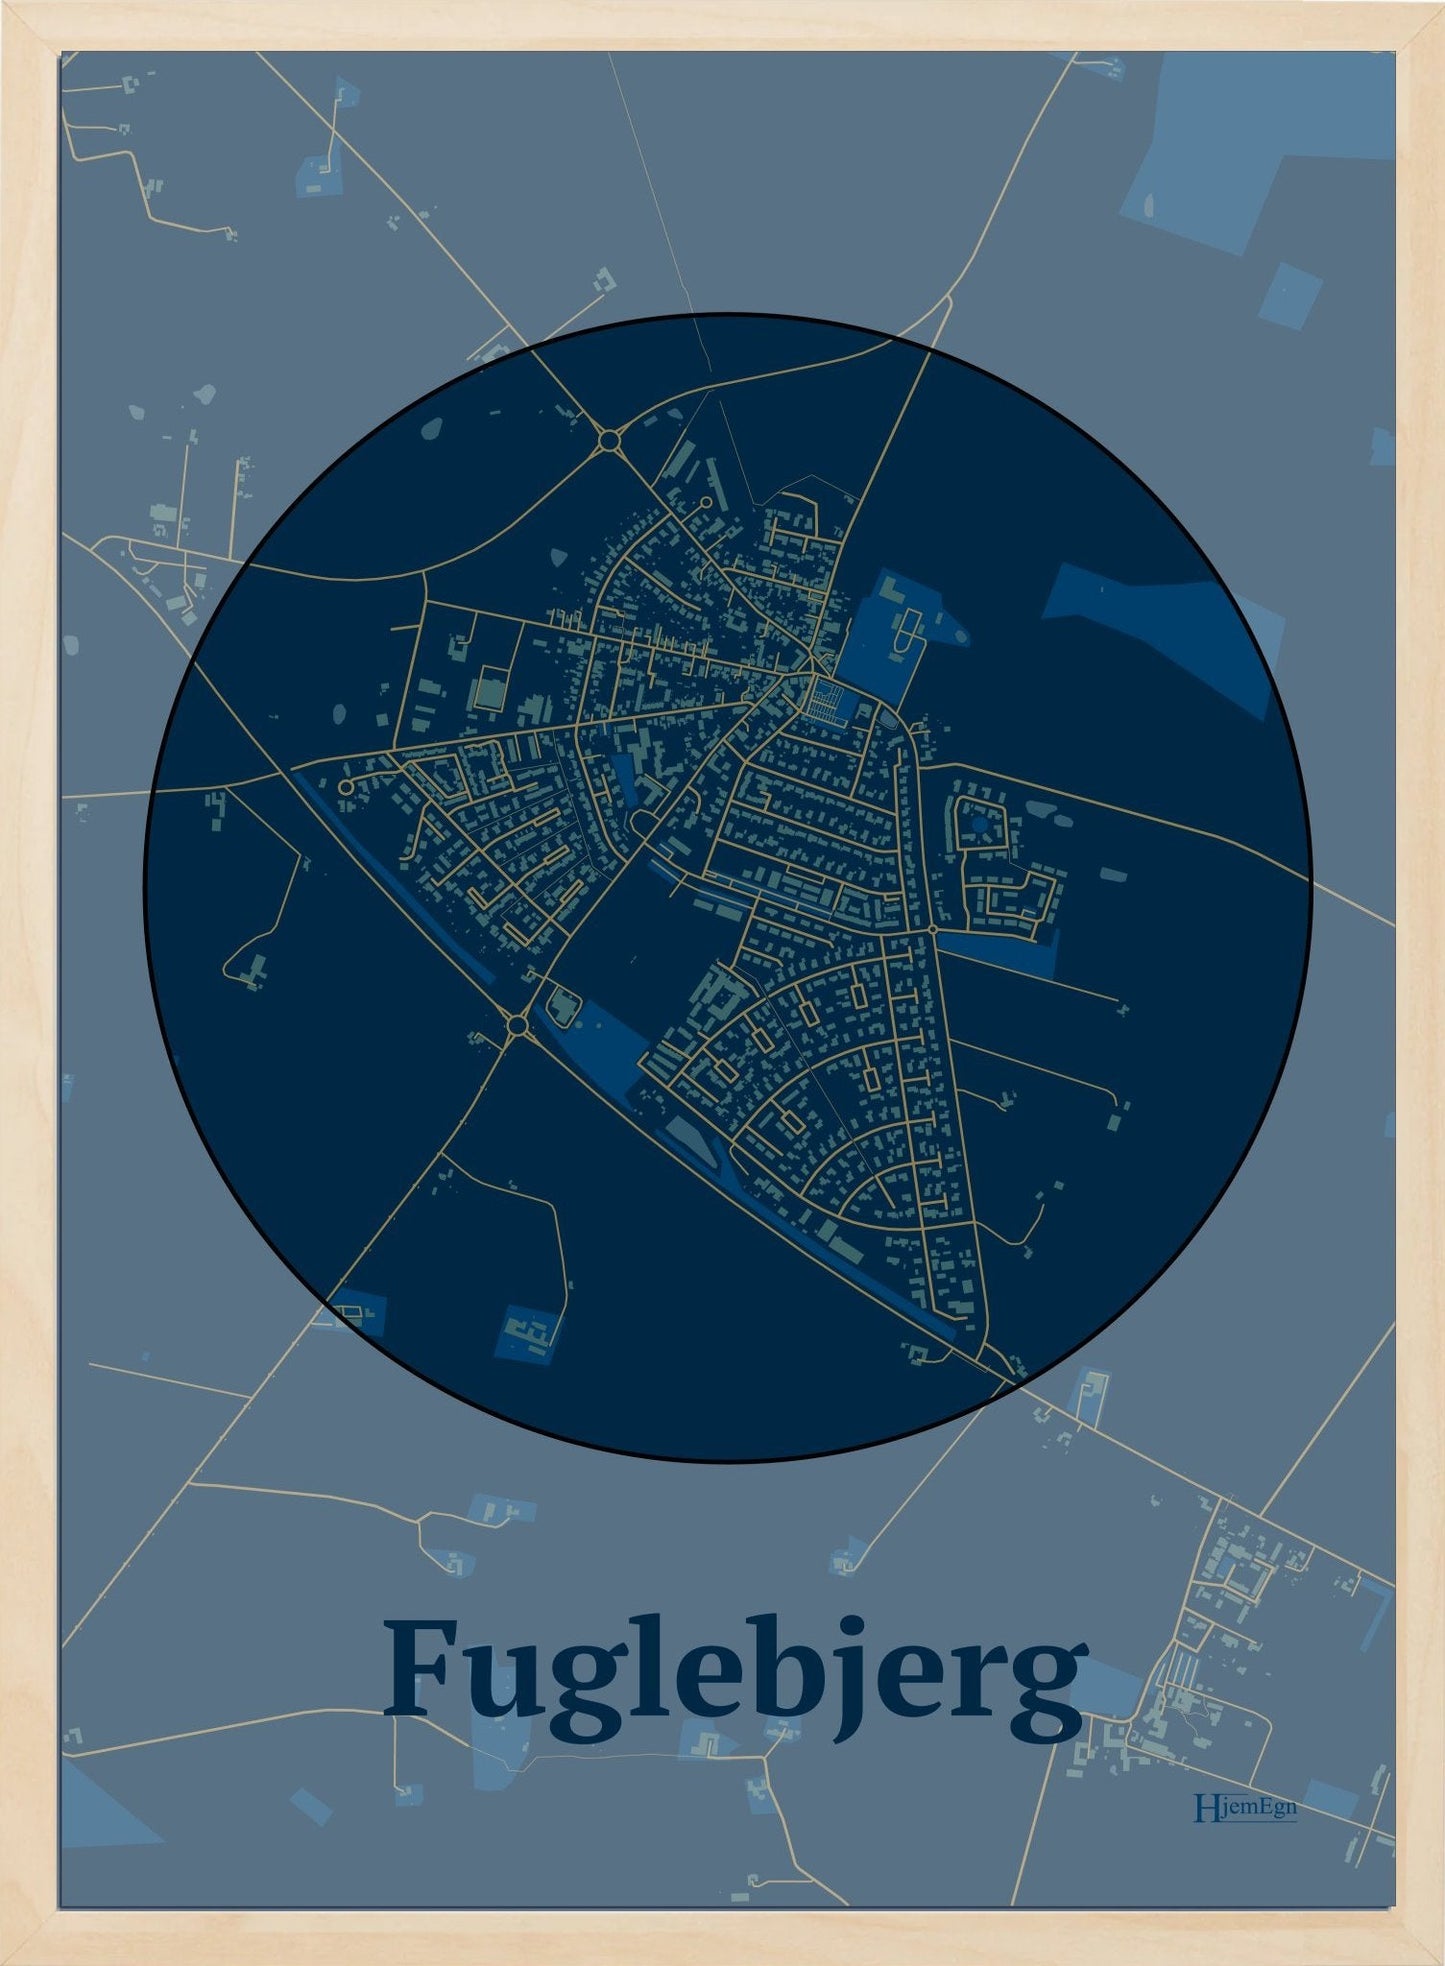 Fuglebjerg plakat i farve mørk blå og HjemEgn.dk design centrum. Design bykort for Fuglebjerg